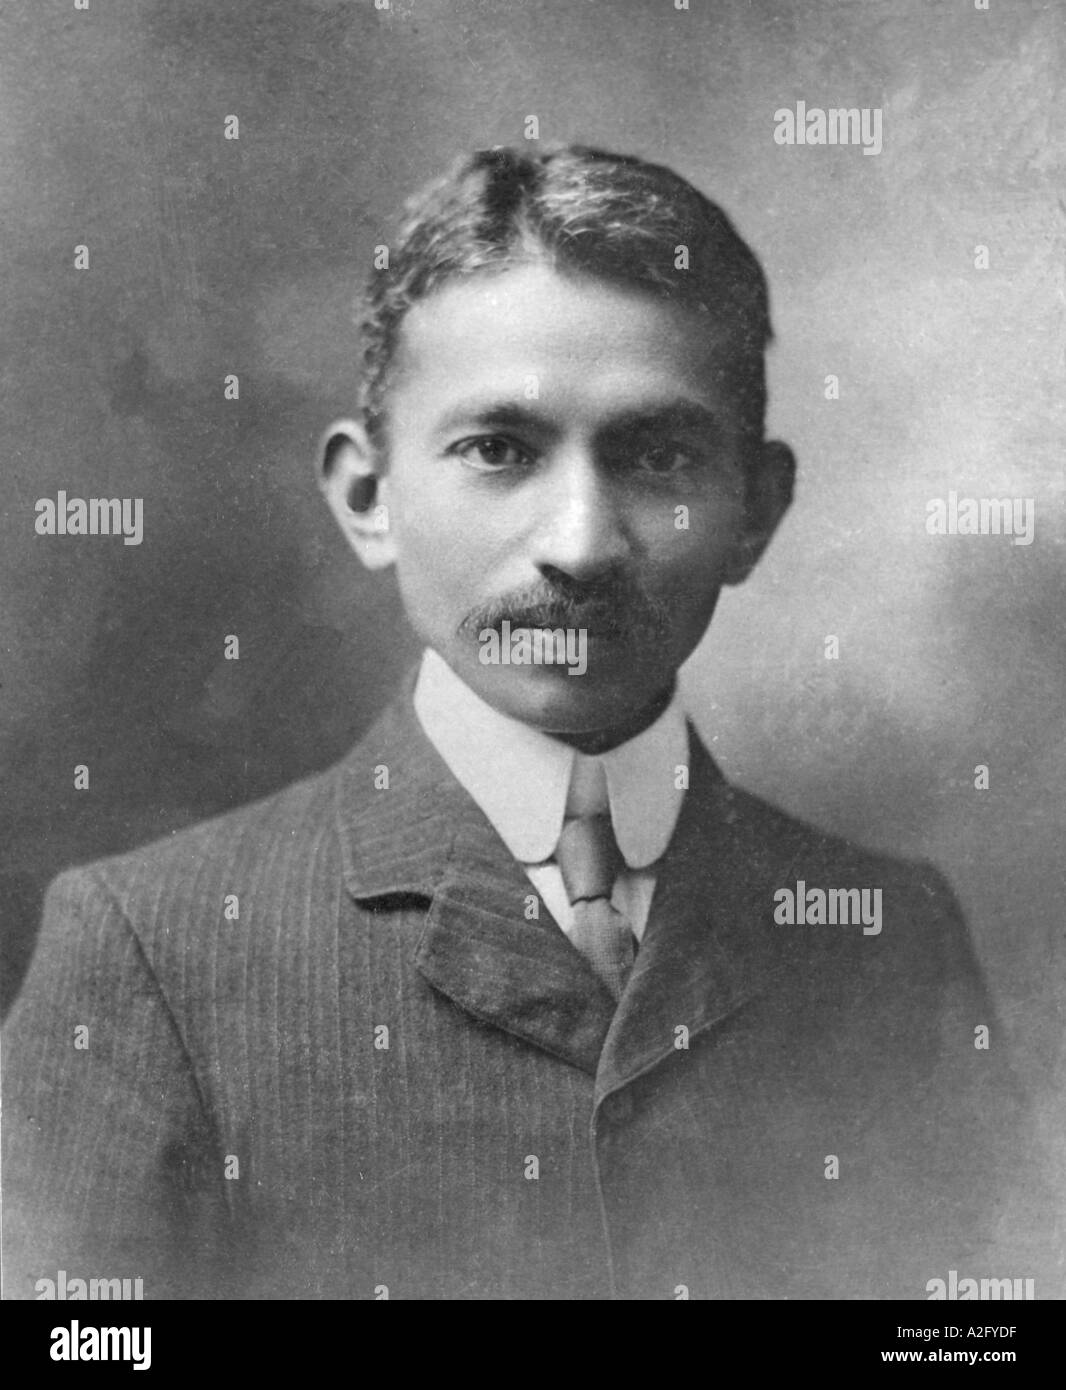 Giovane Mahatma Gandhi a Londra Inghilterra Regno Unito UK 1909 in giacca giacca camicia e cravatta, vecchia foto d'epoca 1900s Foto Stock